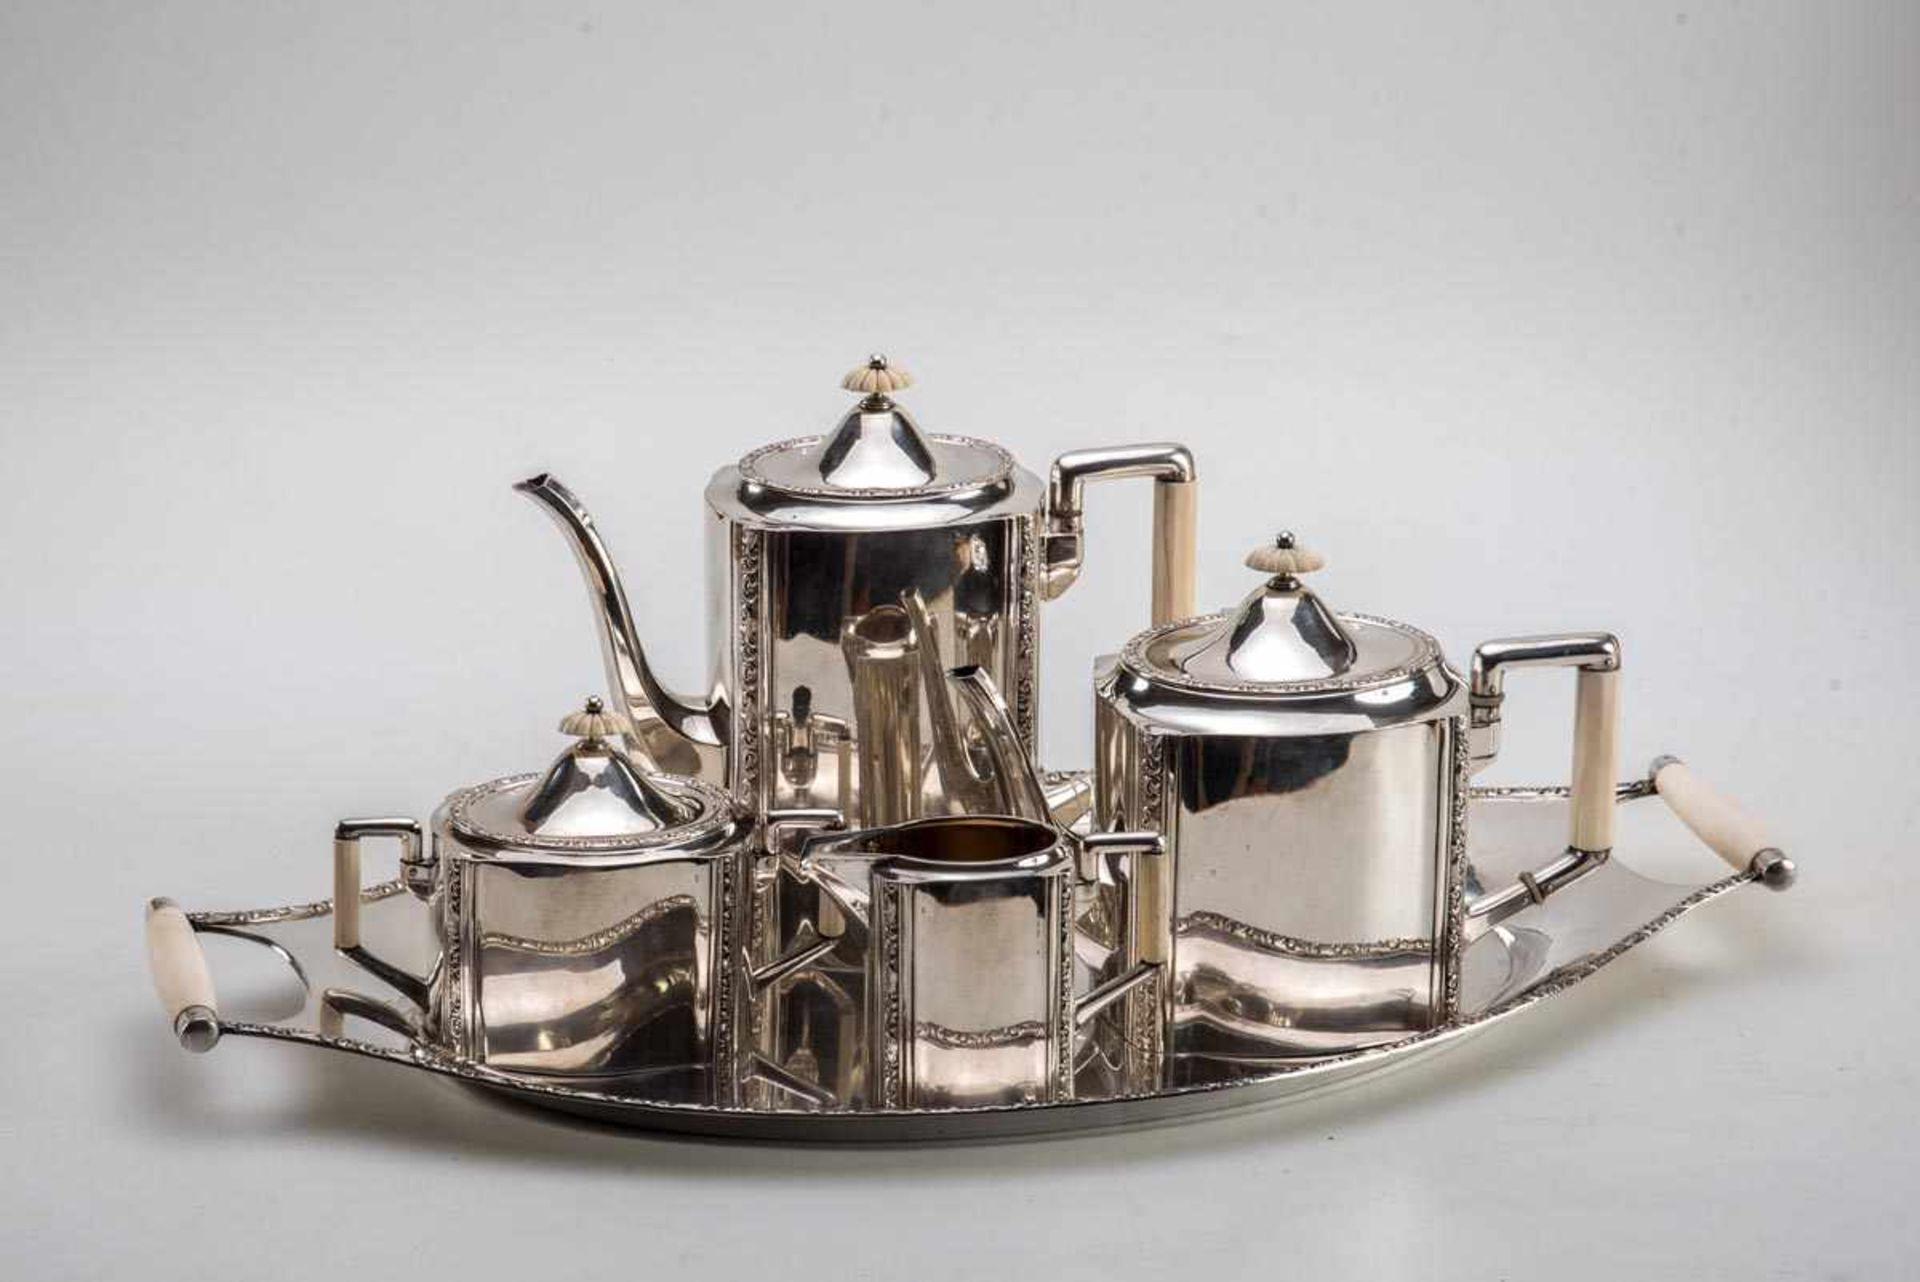 5-teilg. Kaffee-Teeset, Bremer SilberwerkstättenArt Déco um 1920-30. 800er Silber, teilweise innen